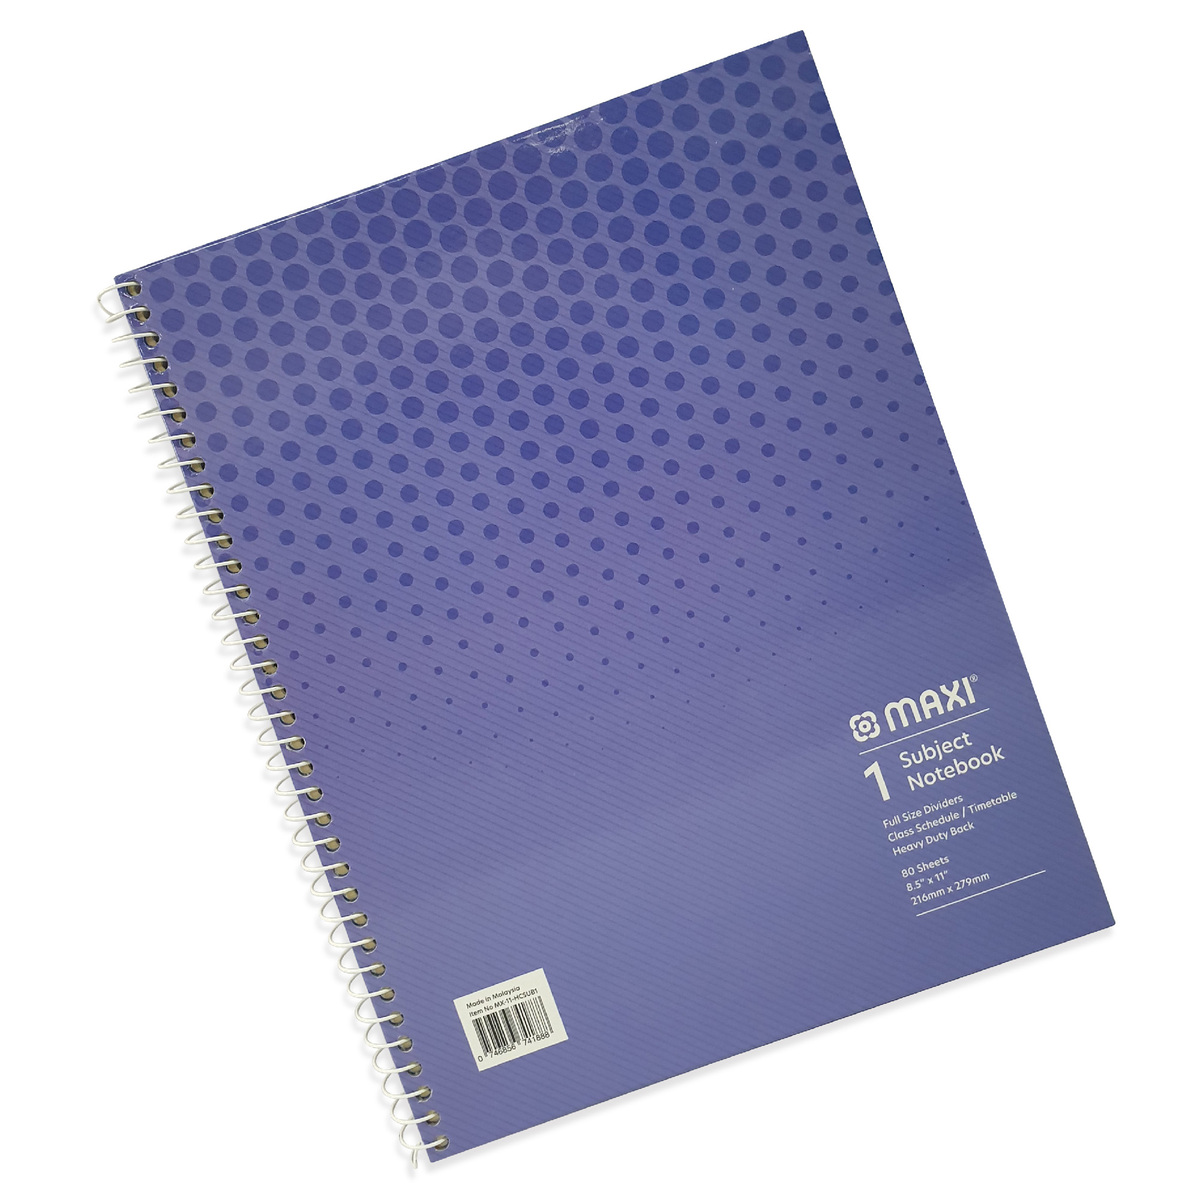 ماكسي دفتر سلك بغطاء صلب موضوع واحد ، 11 بوصة ×8.5 بوصة ، 80 ورقة ، ألوان متنوعة ، MX-11-HCSUB1